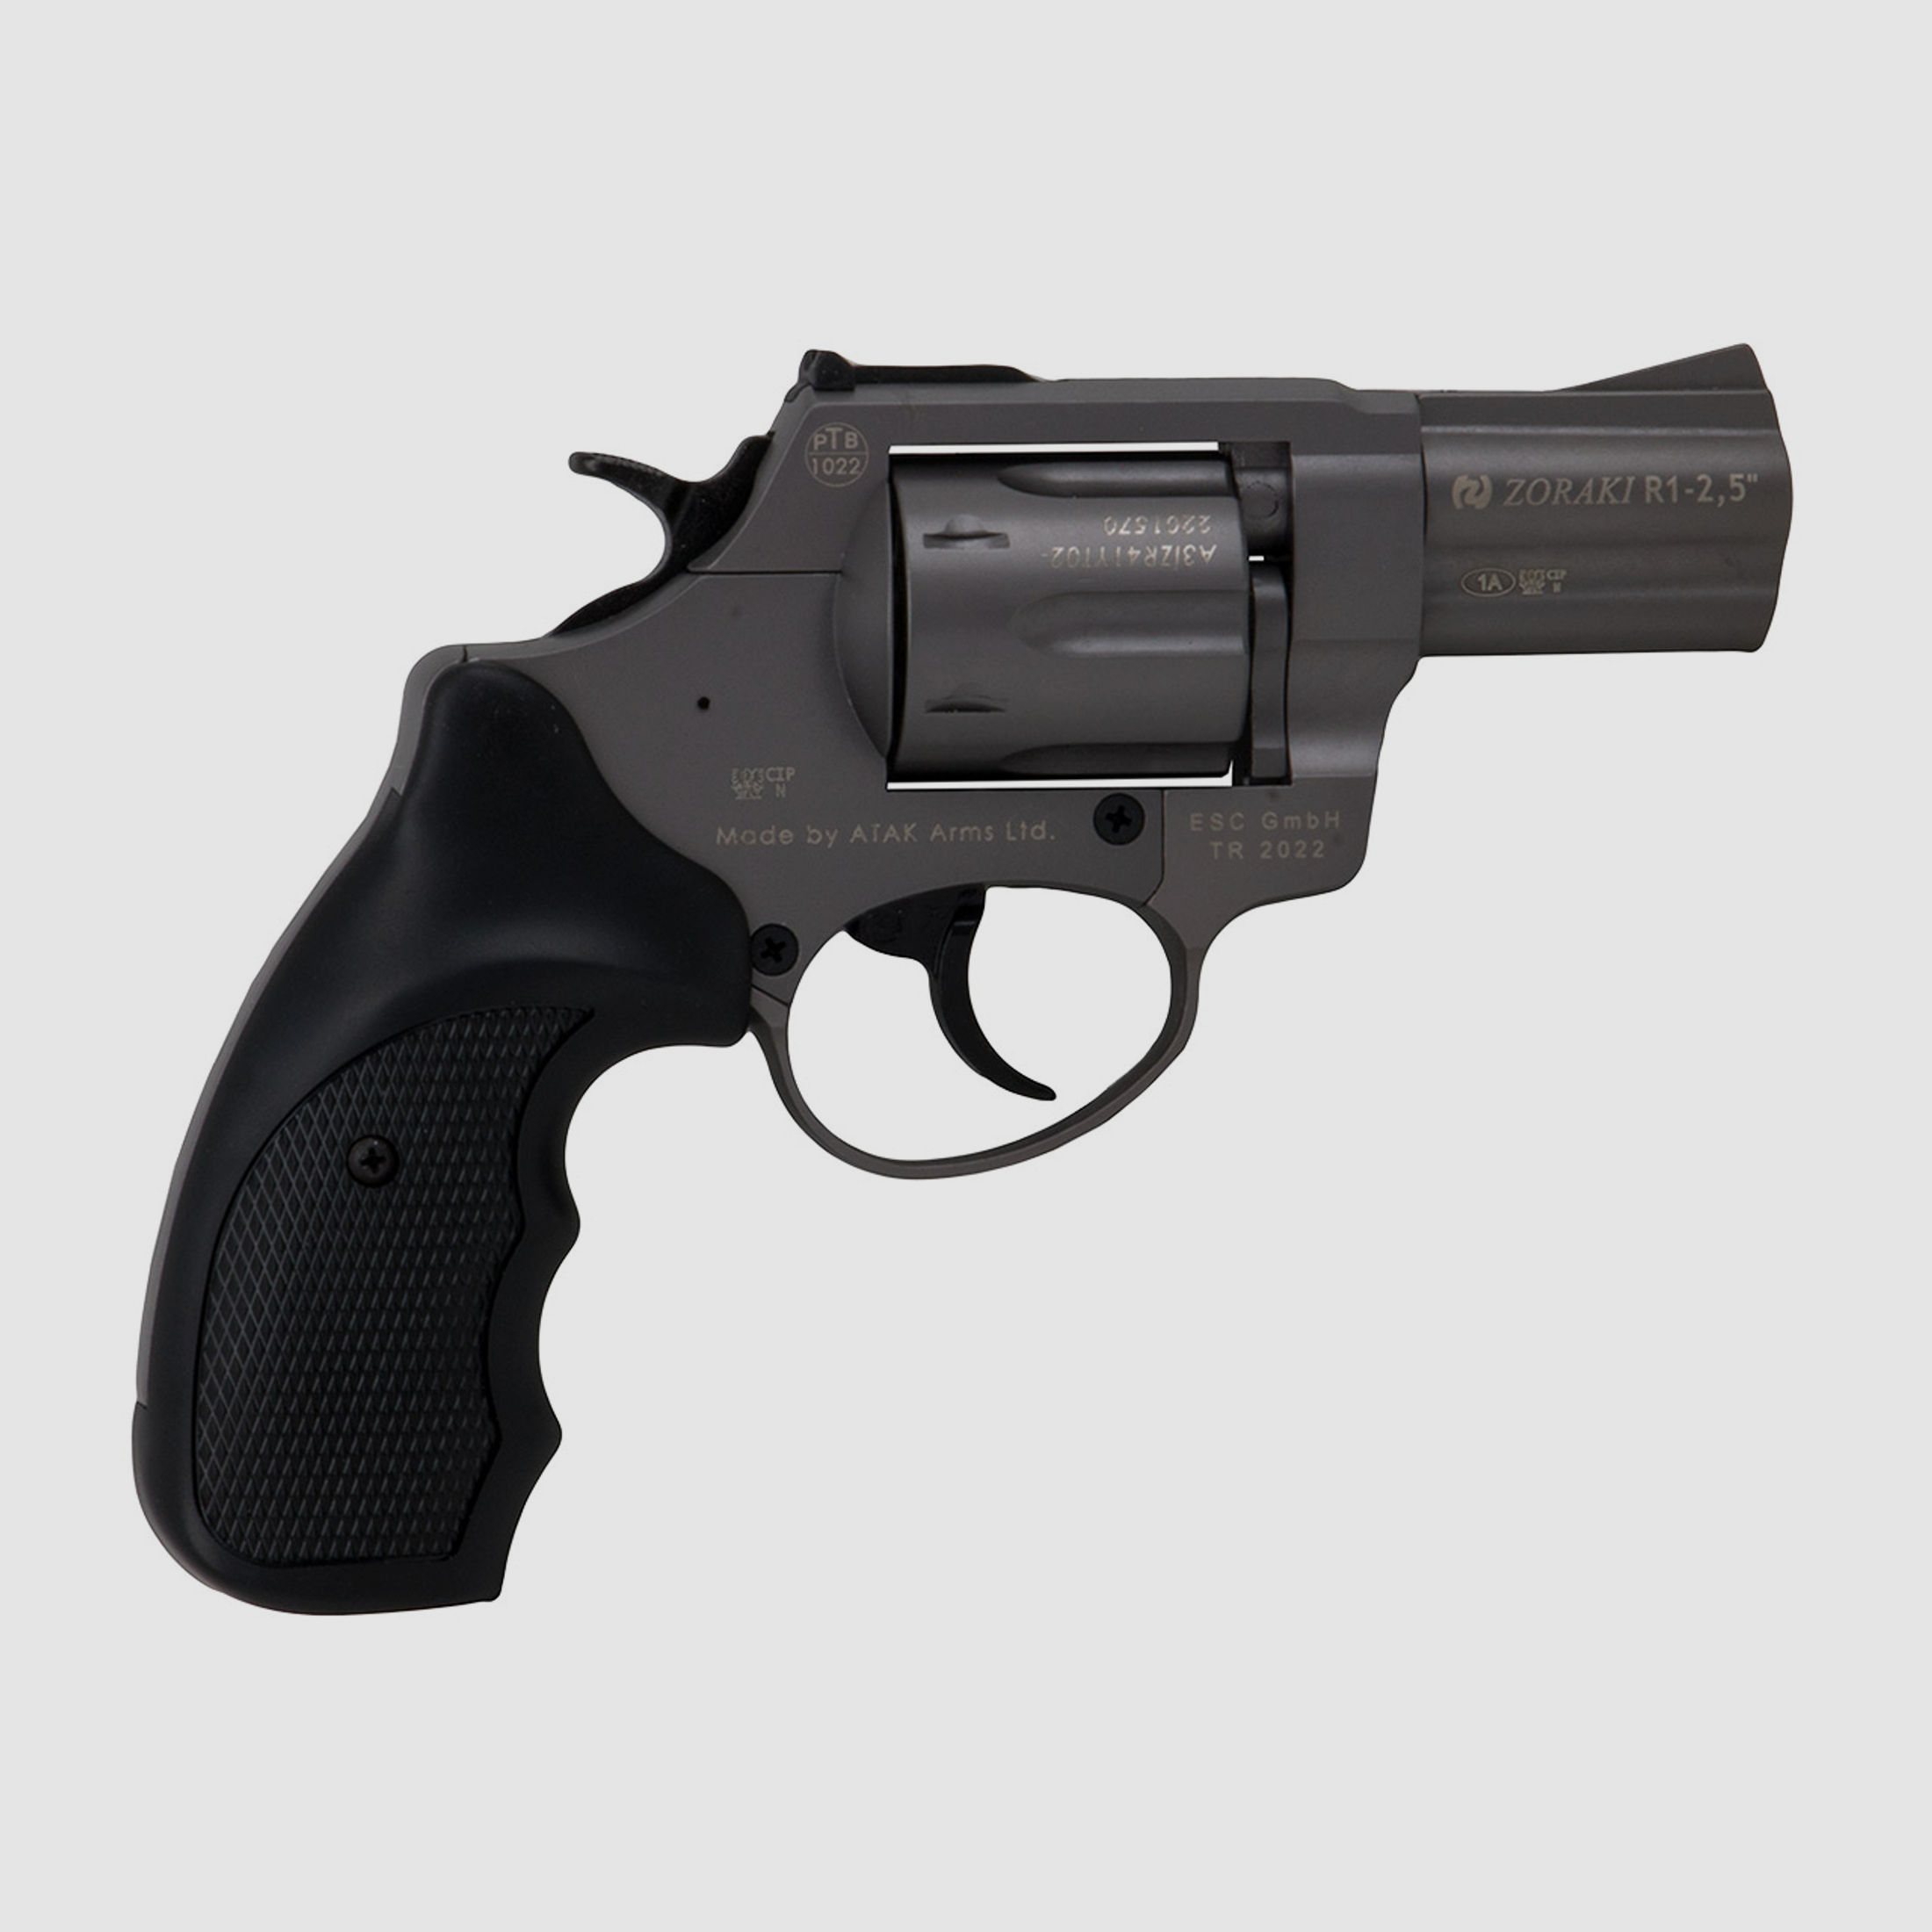 Schreckschuss Revolver Zoraki R1 Titan 2,5 Zoll PTB 1022 Kaliber 9 mm R.K. (P18) + 50 Schuss